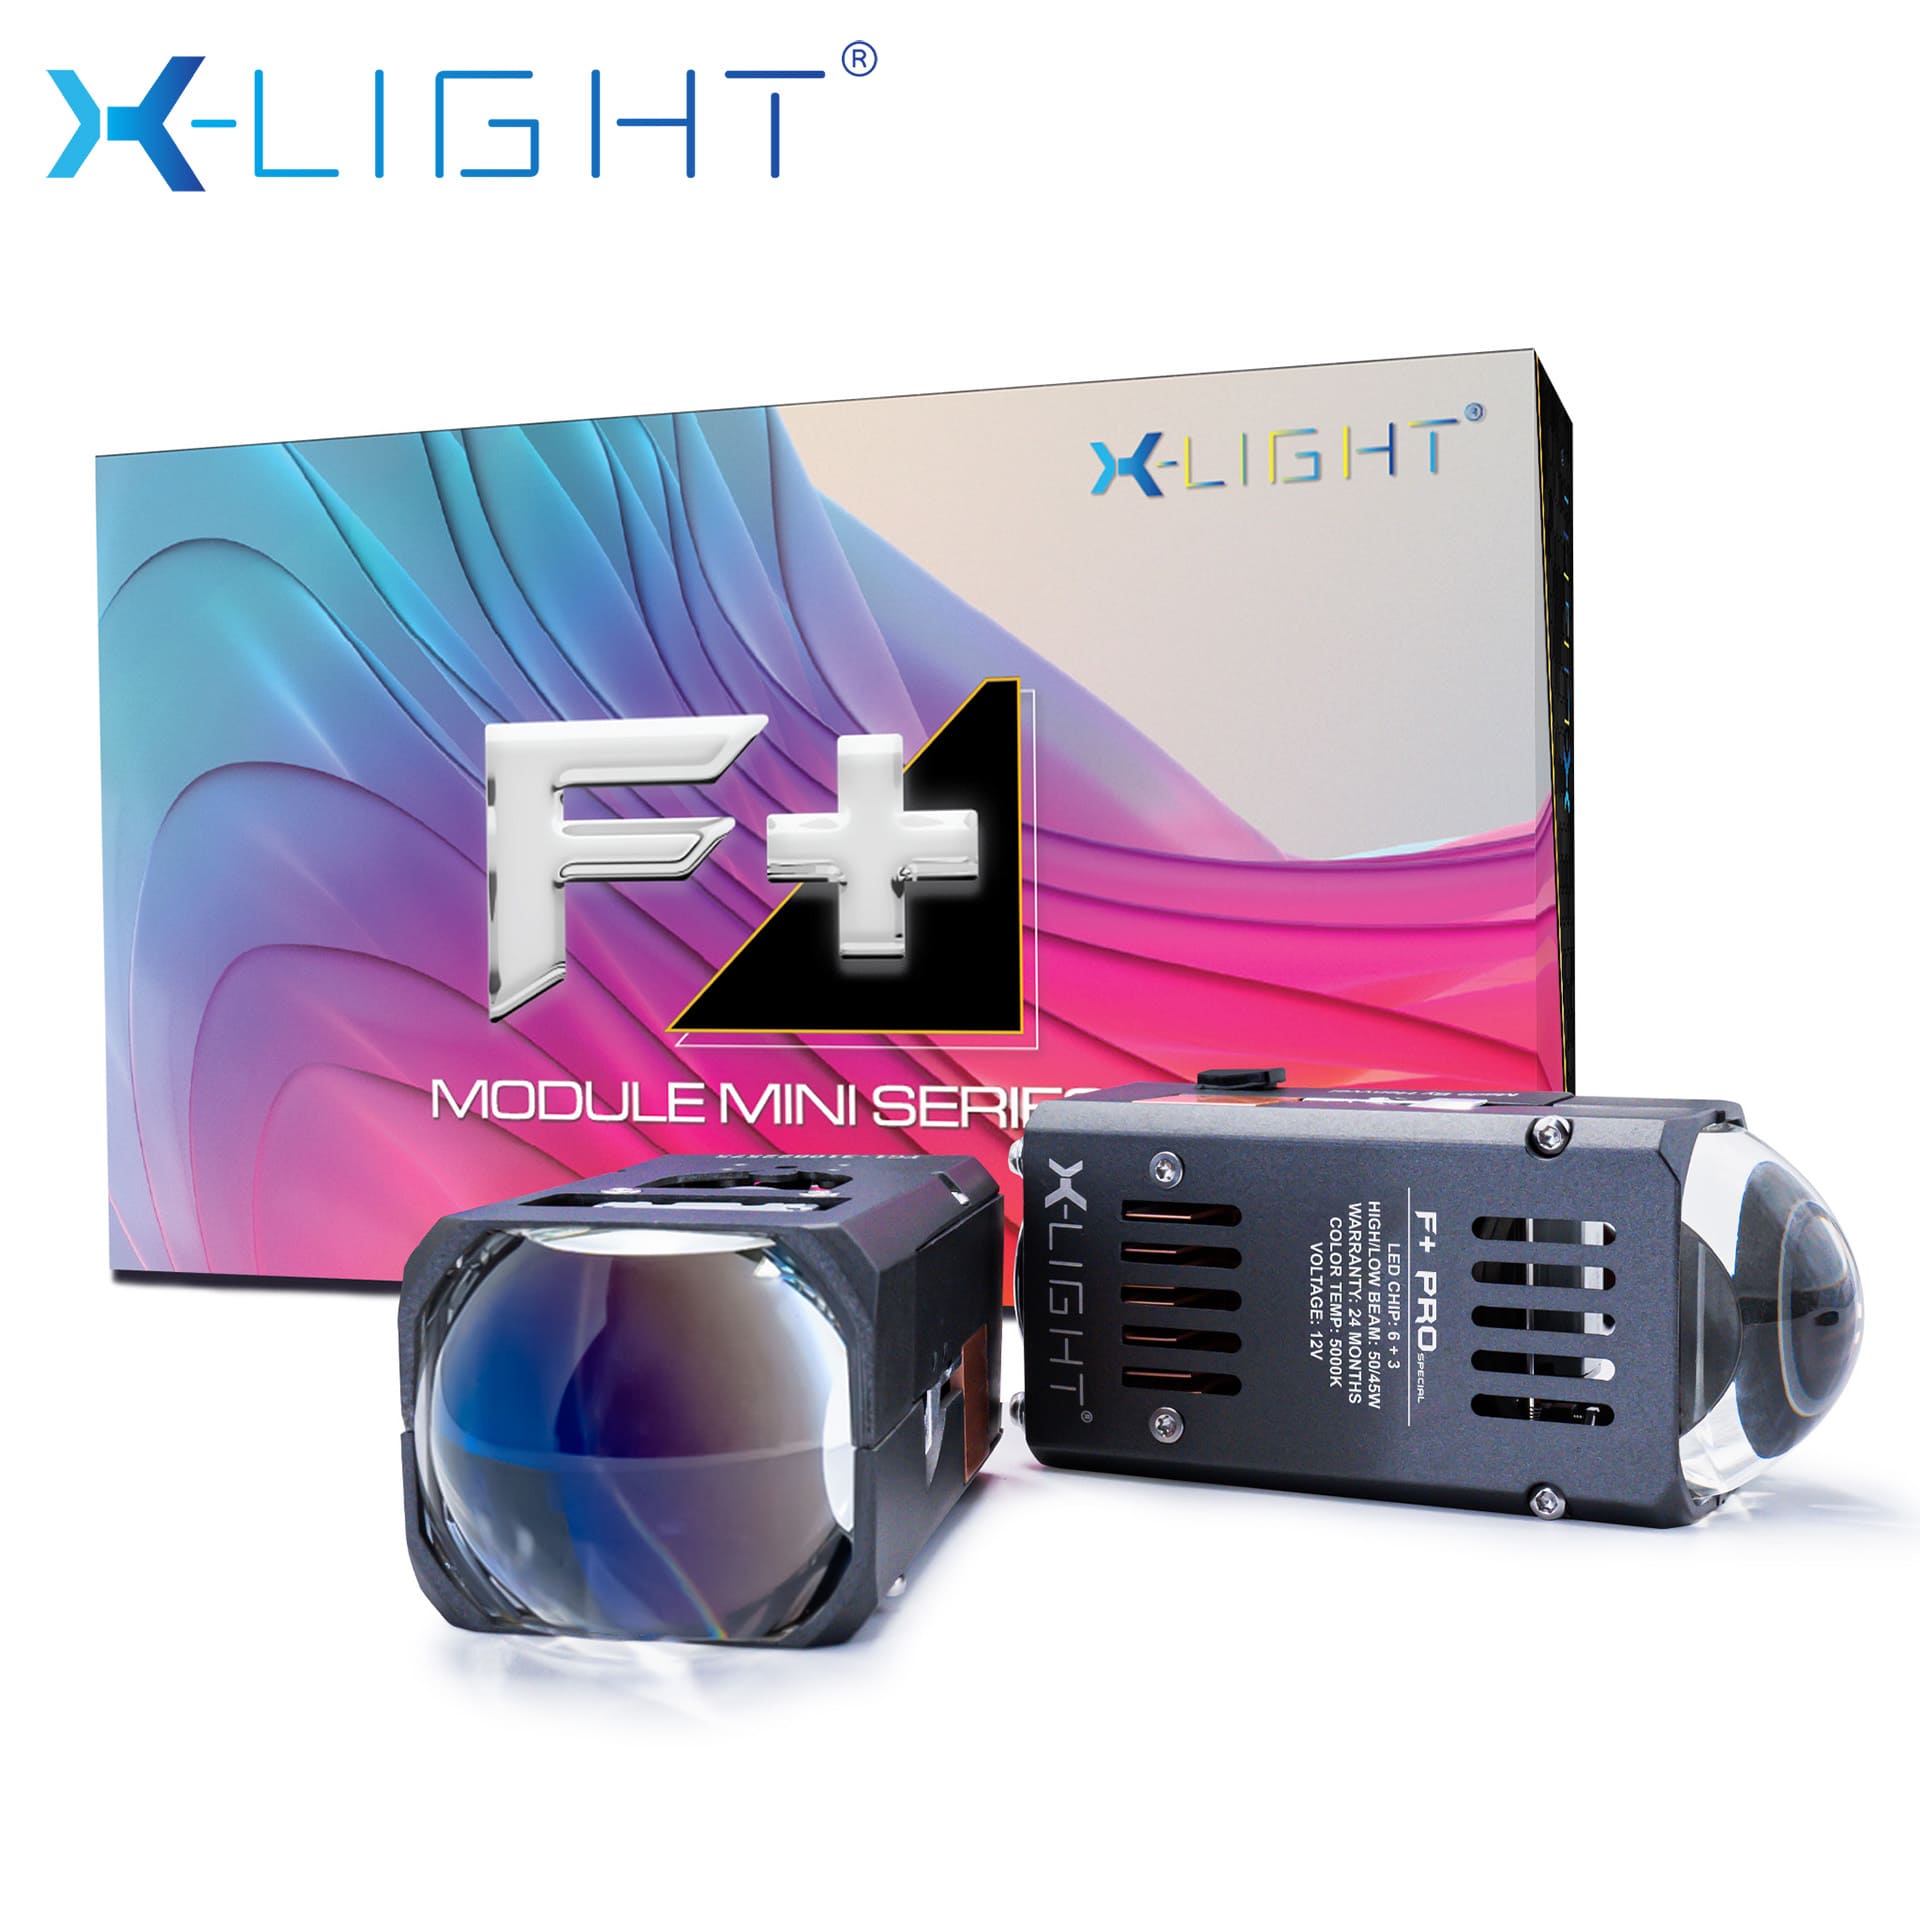 MODULE BI LED MINI X-LIGHT F+ PRO SPECIAL 5500K